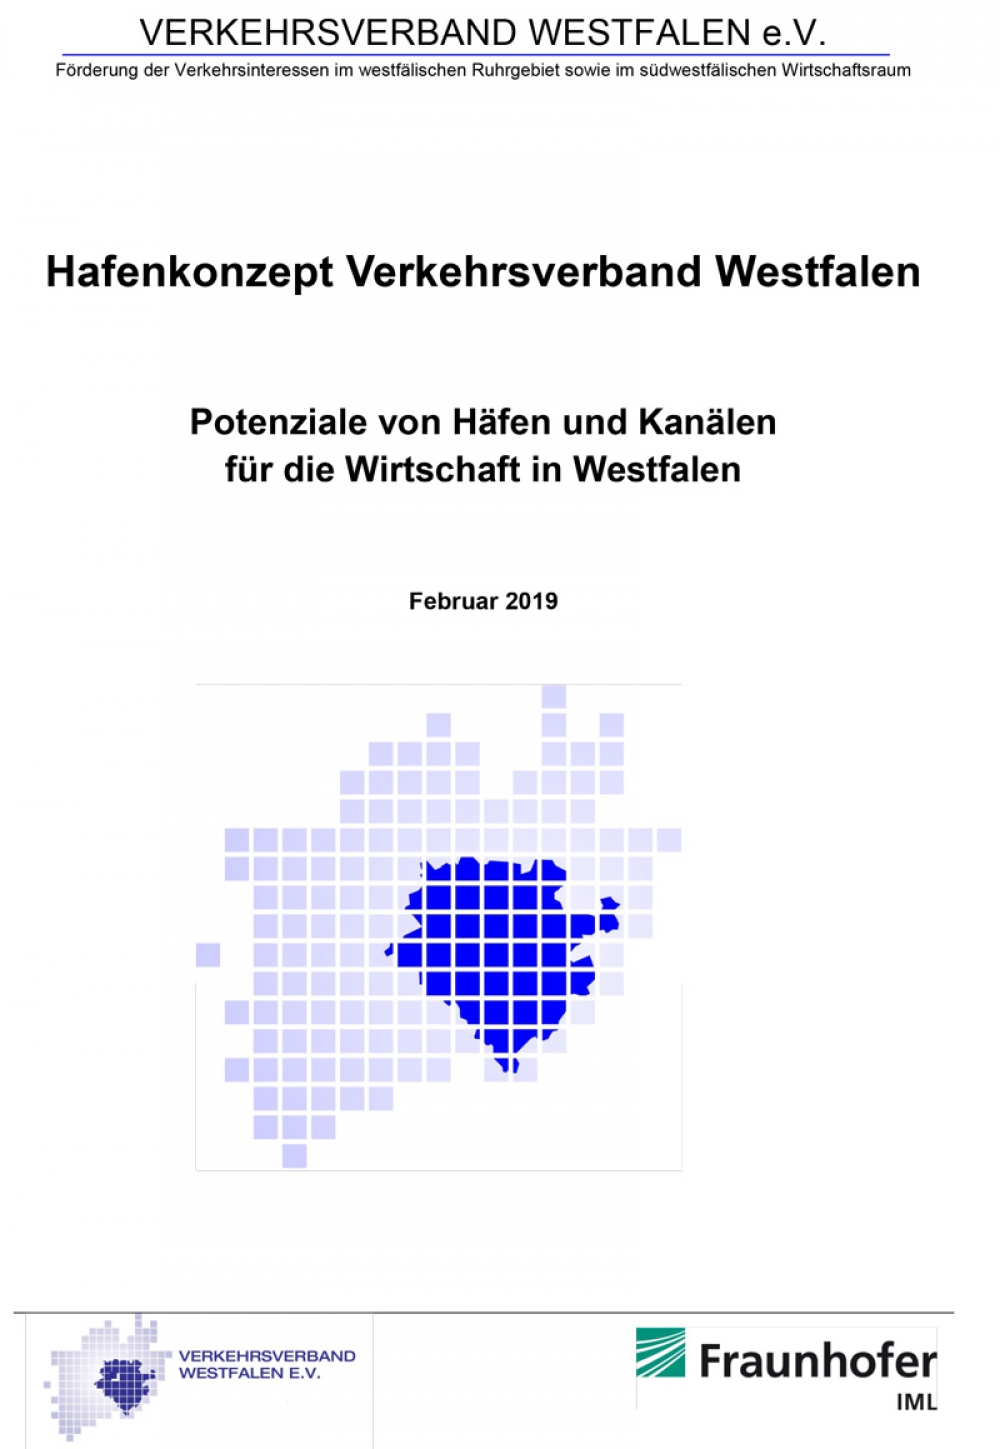 Kurzfassung: Hafenkonzept Verkehrsverband Westfalen - Potenziale von Häfen und Kanälen für die Wirtschaft in Westfalen